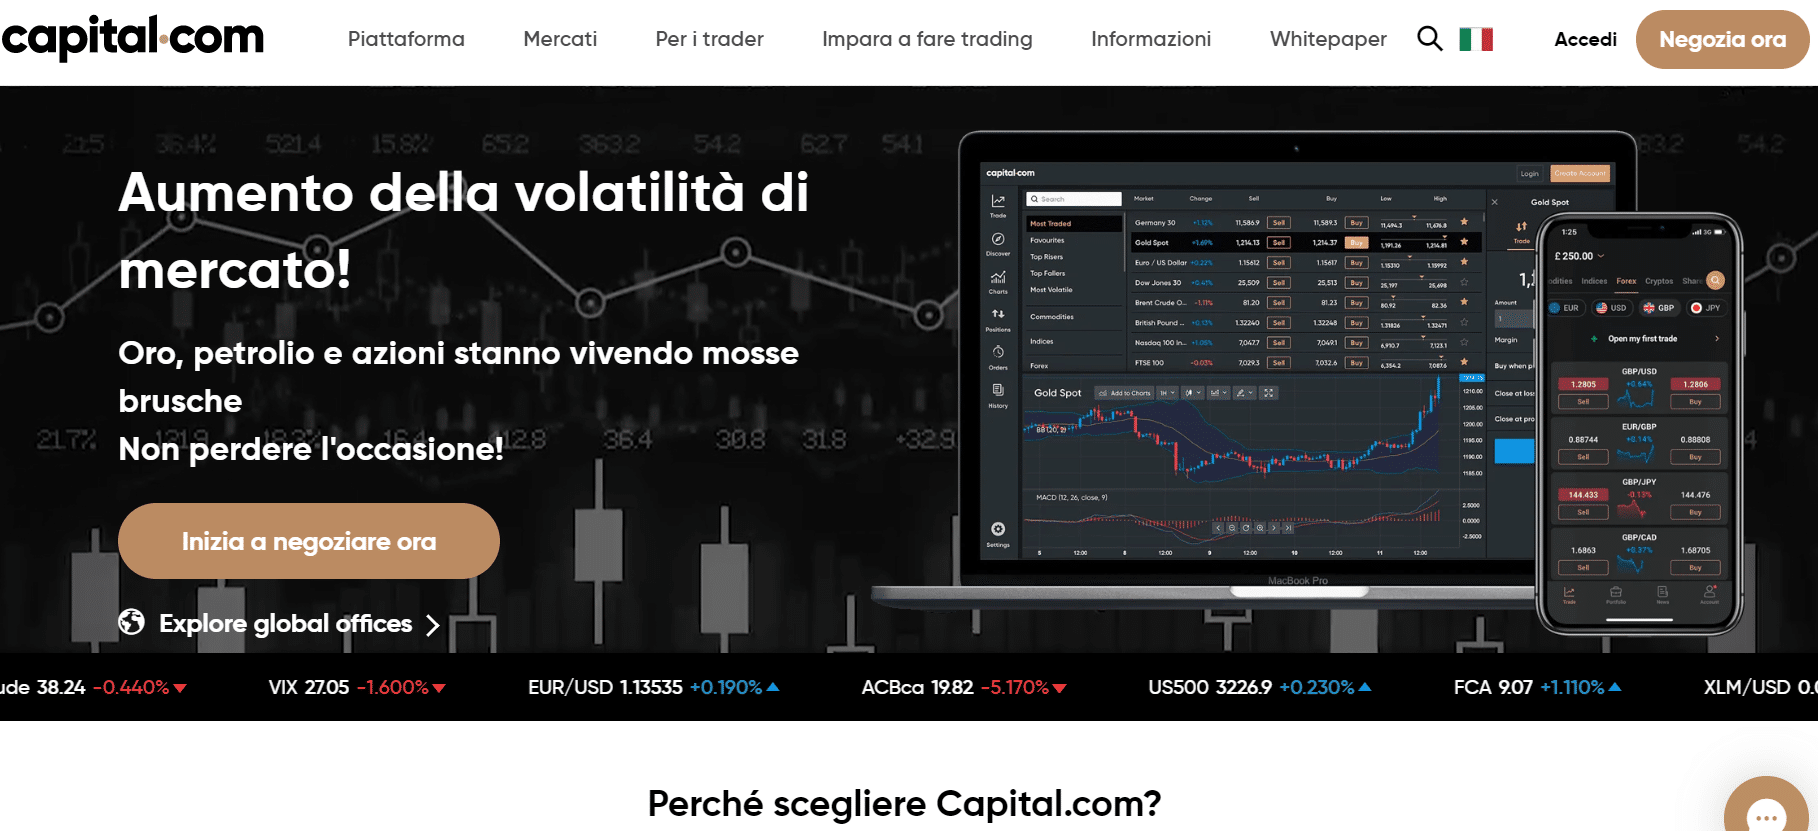 Capital.com è il miglior broker e trading bitcoin